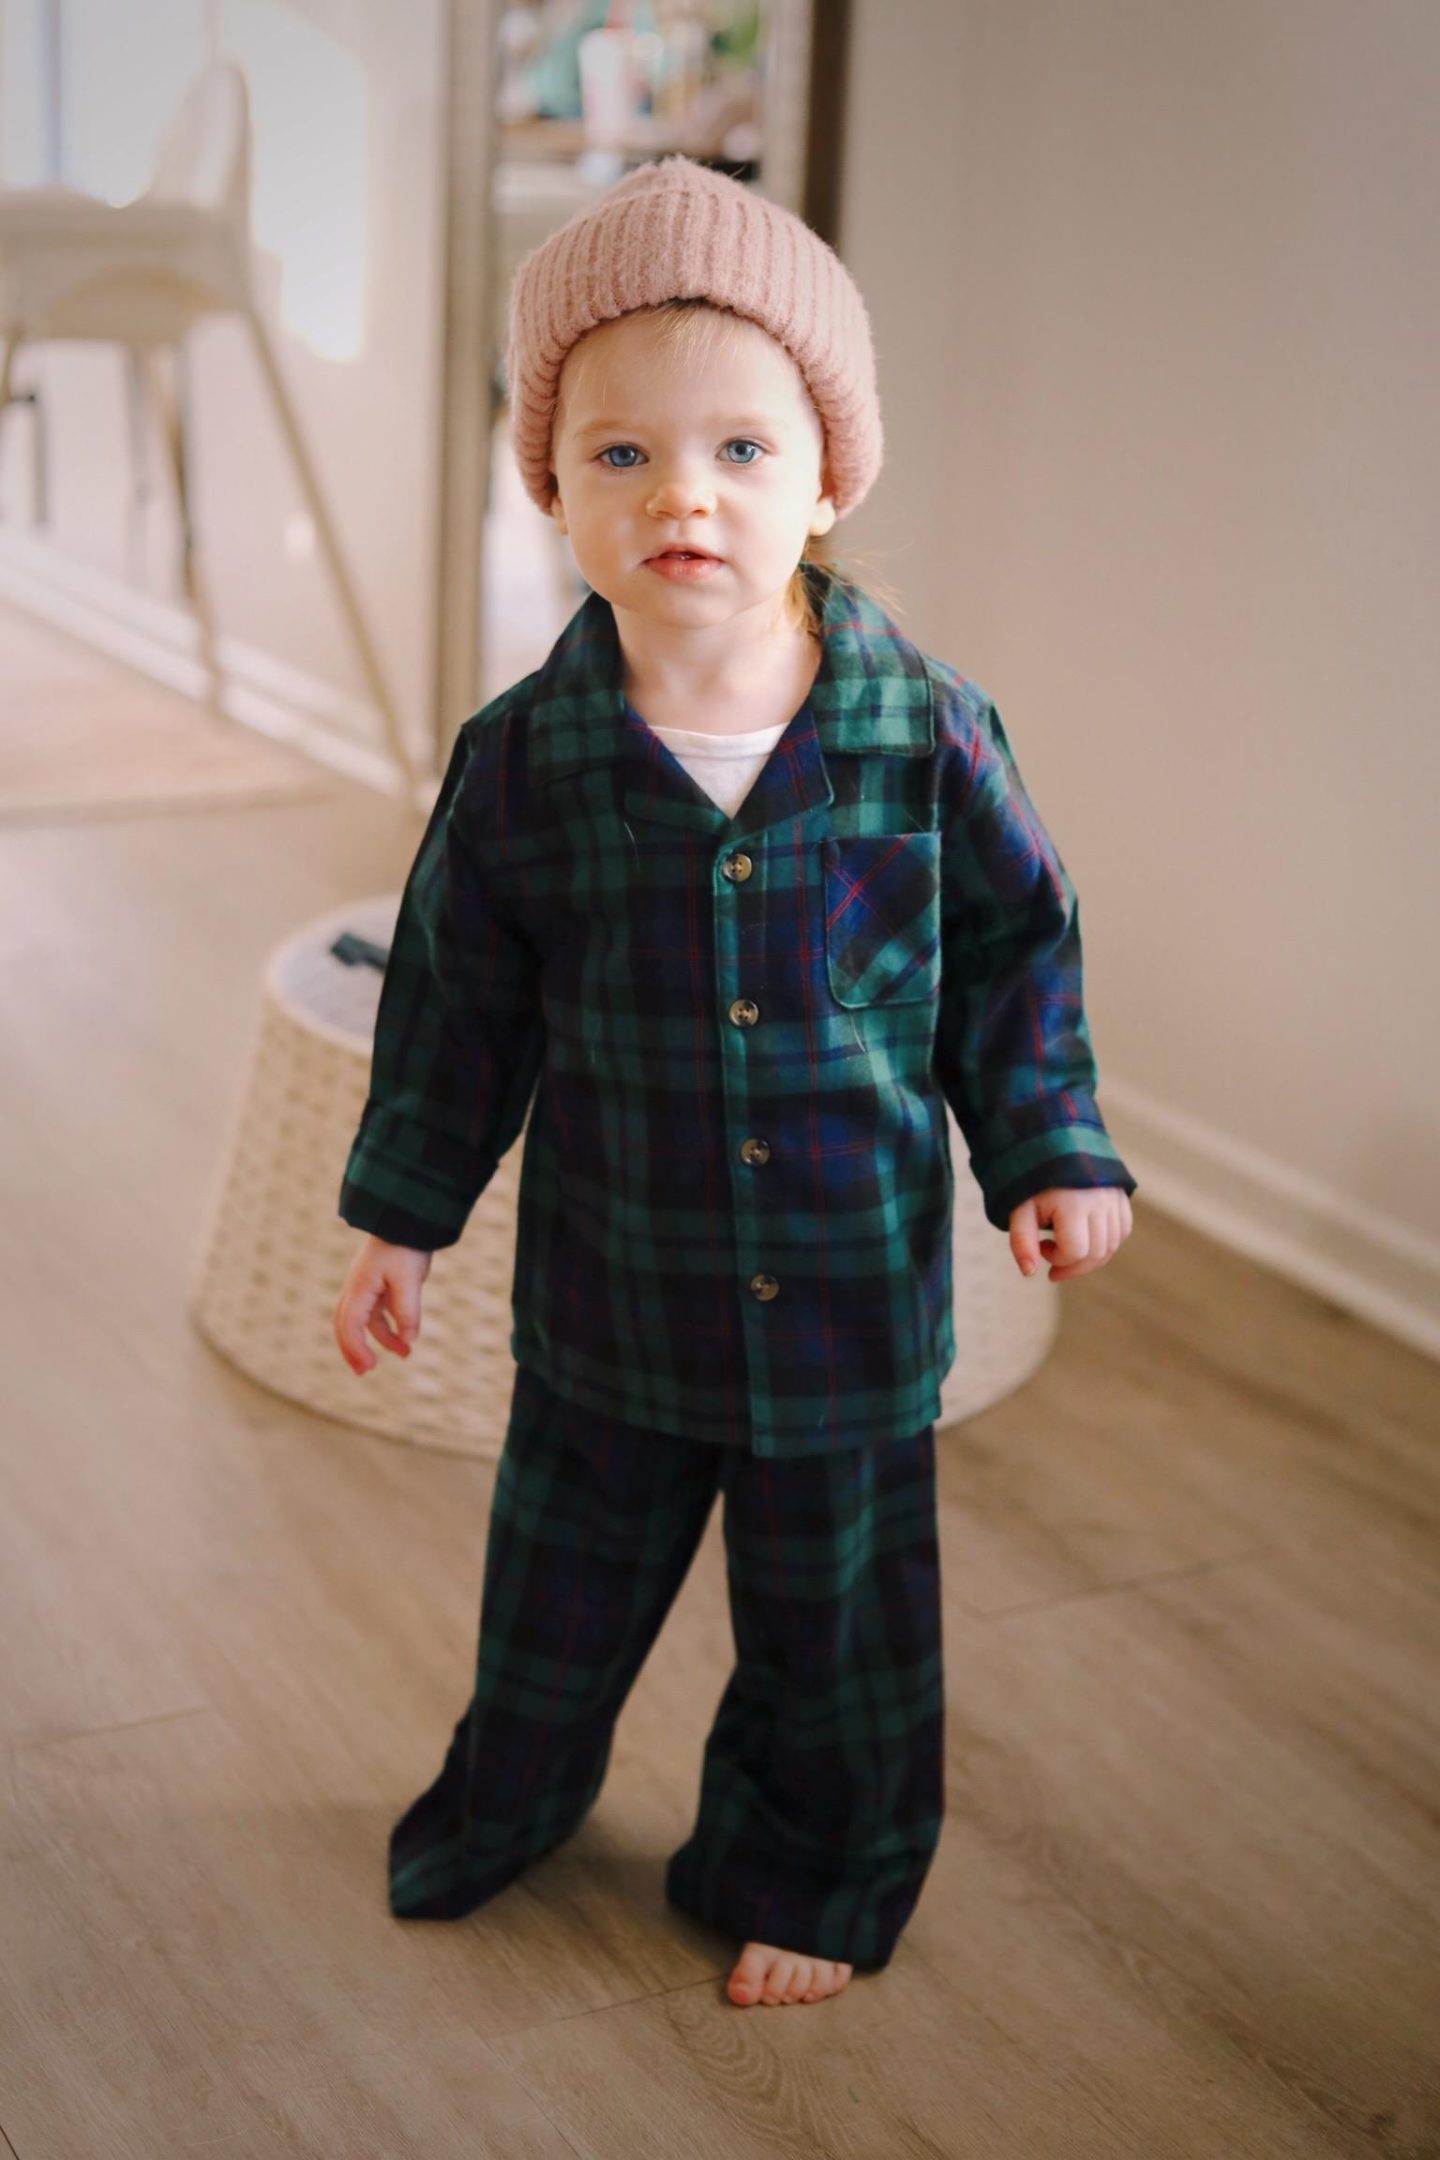 Matching Holiday Pajamas: Christmas 2022 - Abby Saylor Armbruster